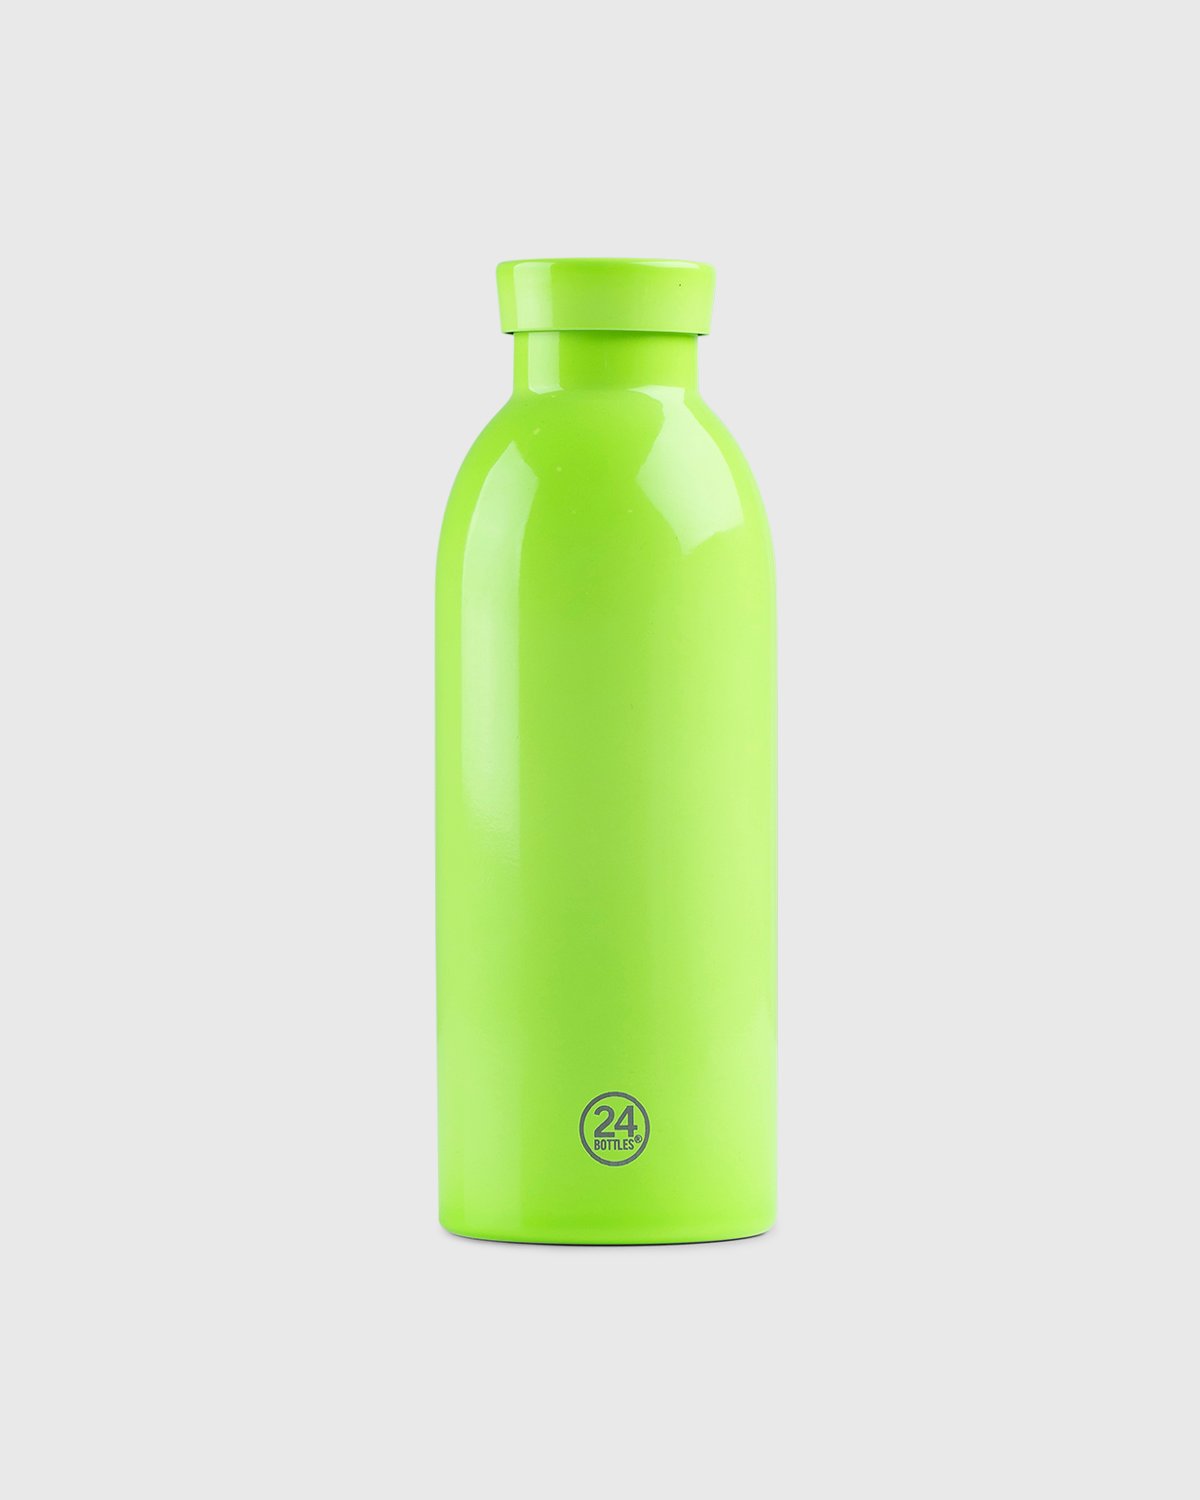 Stone Island - Clima Bottle Green - Lifestyle - Green - Image 3